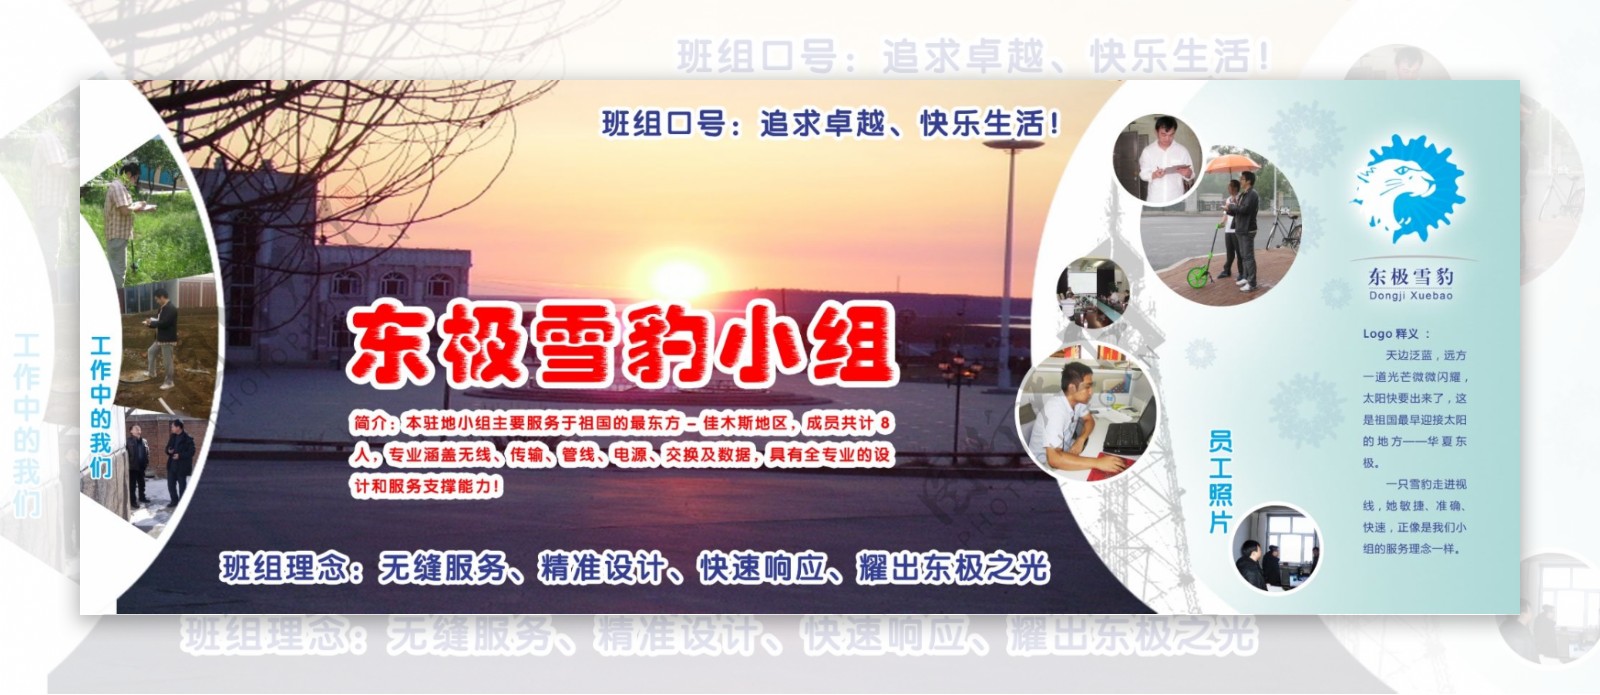 中国移动班组名片广告设计图片